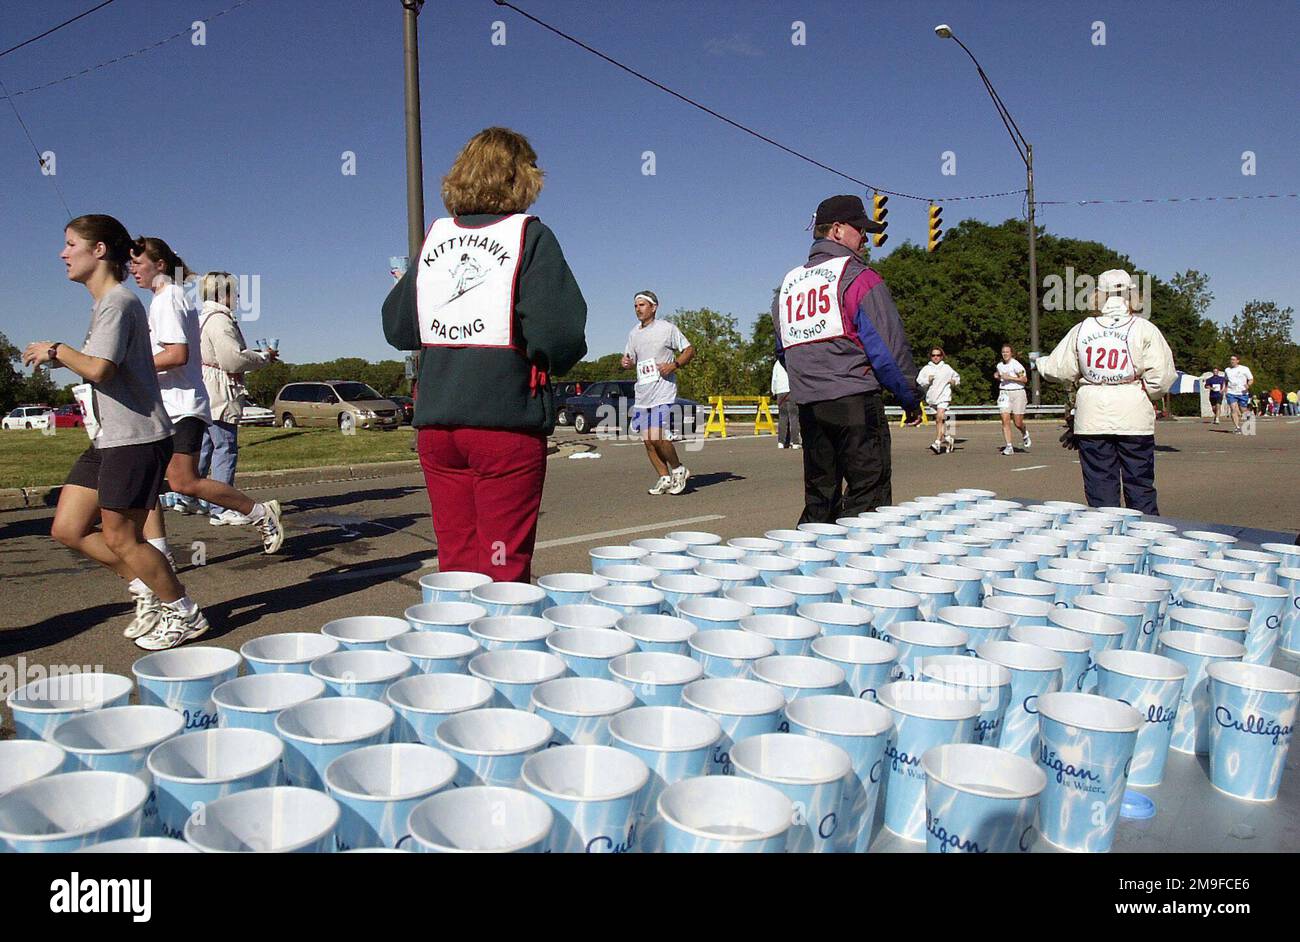 Als sich am 16. September 2000 etwa 3000 Wettbewerber aus der ganzen Welt zum vierten jährlichen Air Force Marathon auf dem Wright-Patterson Air Force Base, Ohio, versammelten, sorgten die Organisatoren dafür, dass mehr als genug Hilfsstationen zur Verfügung standen. Freiwillige von Hilfsorganisationen säumen die Straßen mit Tassen Wasser, Gatorade, nassen Schwämmen, Obst und Speise-Gelpacks. Veteran-Marathon-Wettbewerber bewerten den US Air Force Marathon als einen der führenden Anbieter, wenn es um Organisation und Unterstützung von Hilfsstationen für die Mitbewerber geht. Die Strecke begann und endete inmitten legendärer Flugzeuge im Air Force Museum und führte die Läufer durch die Gegend Stockfoto